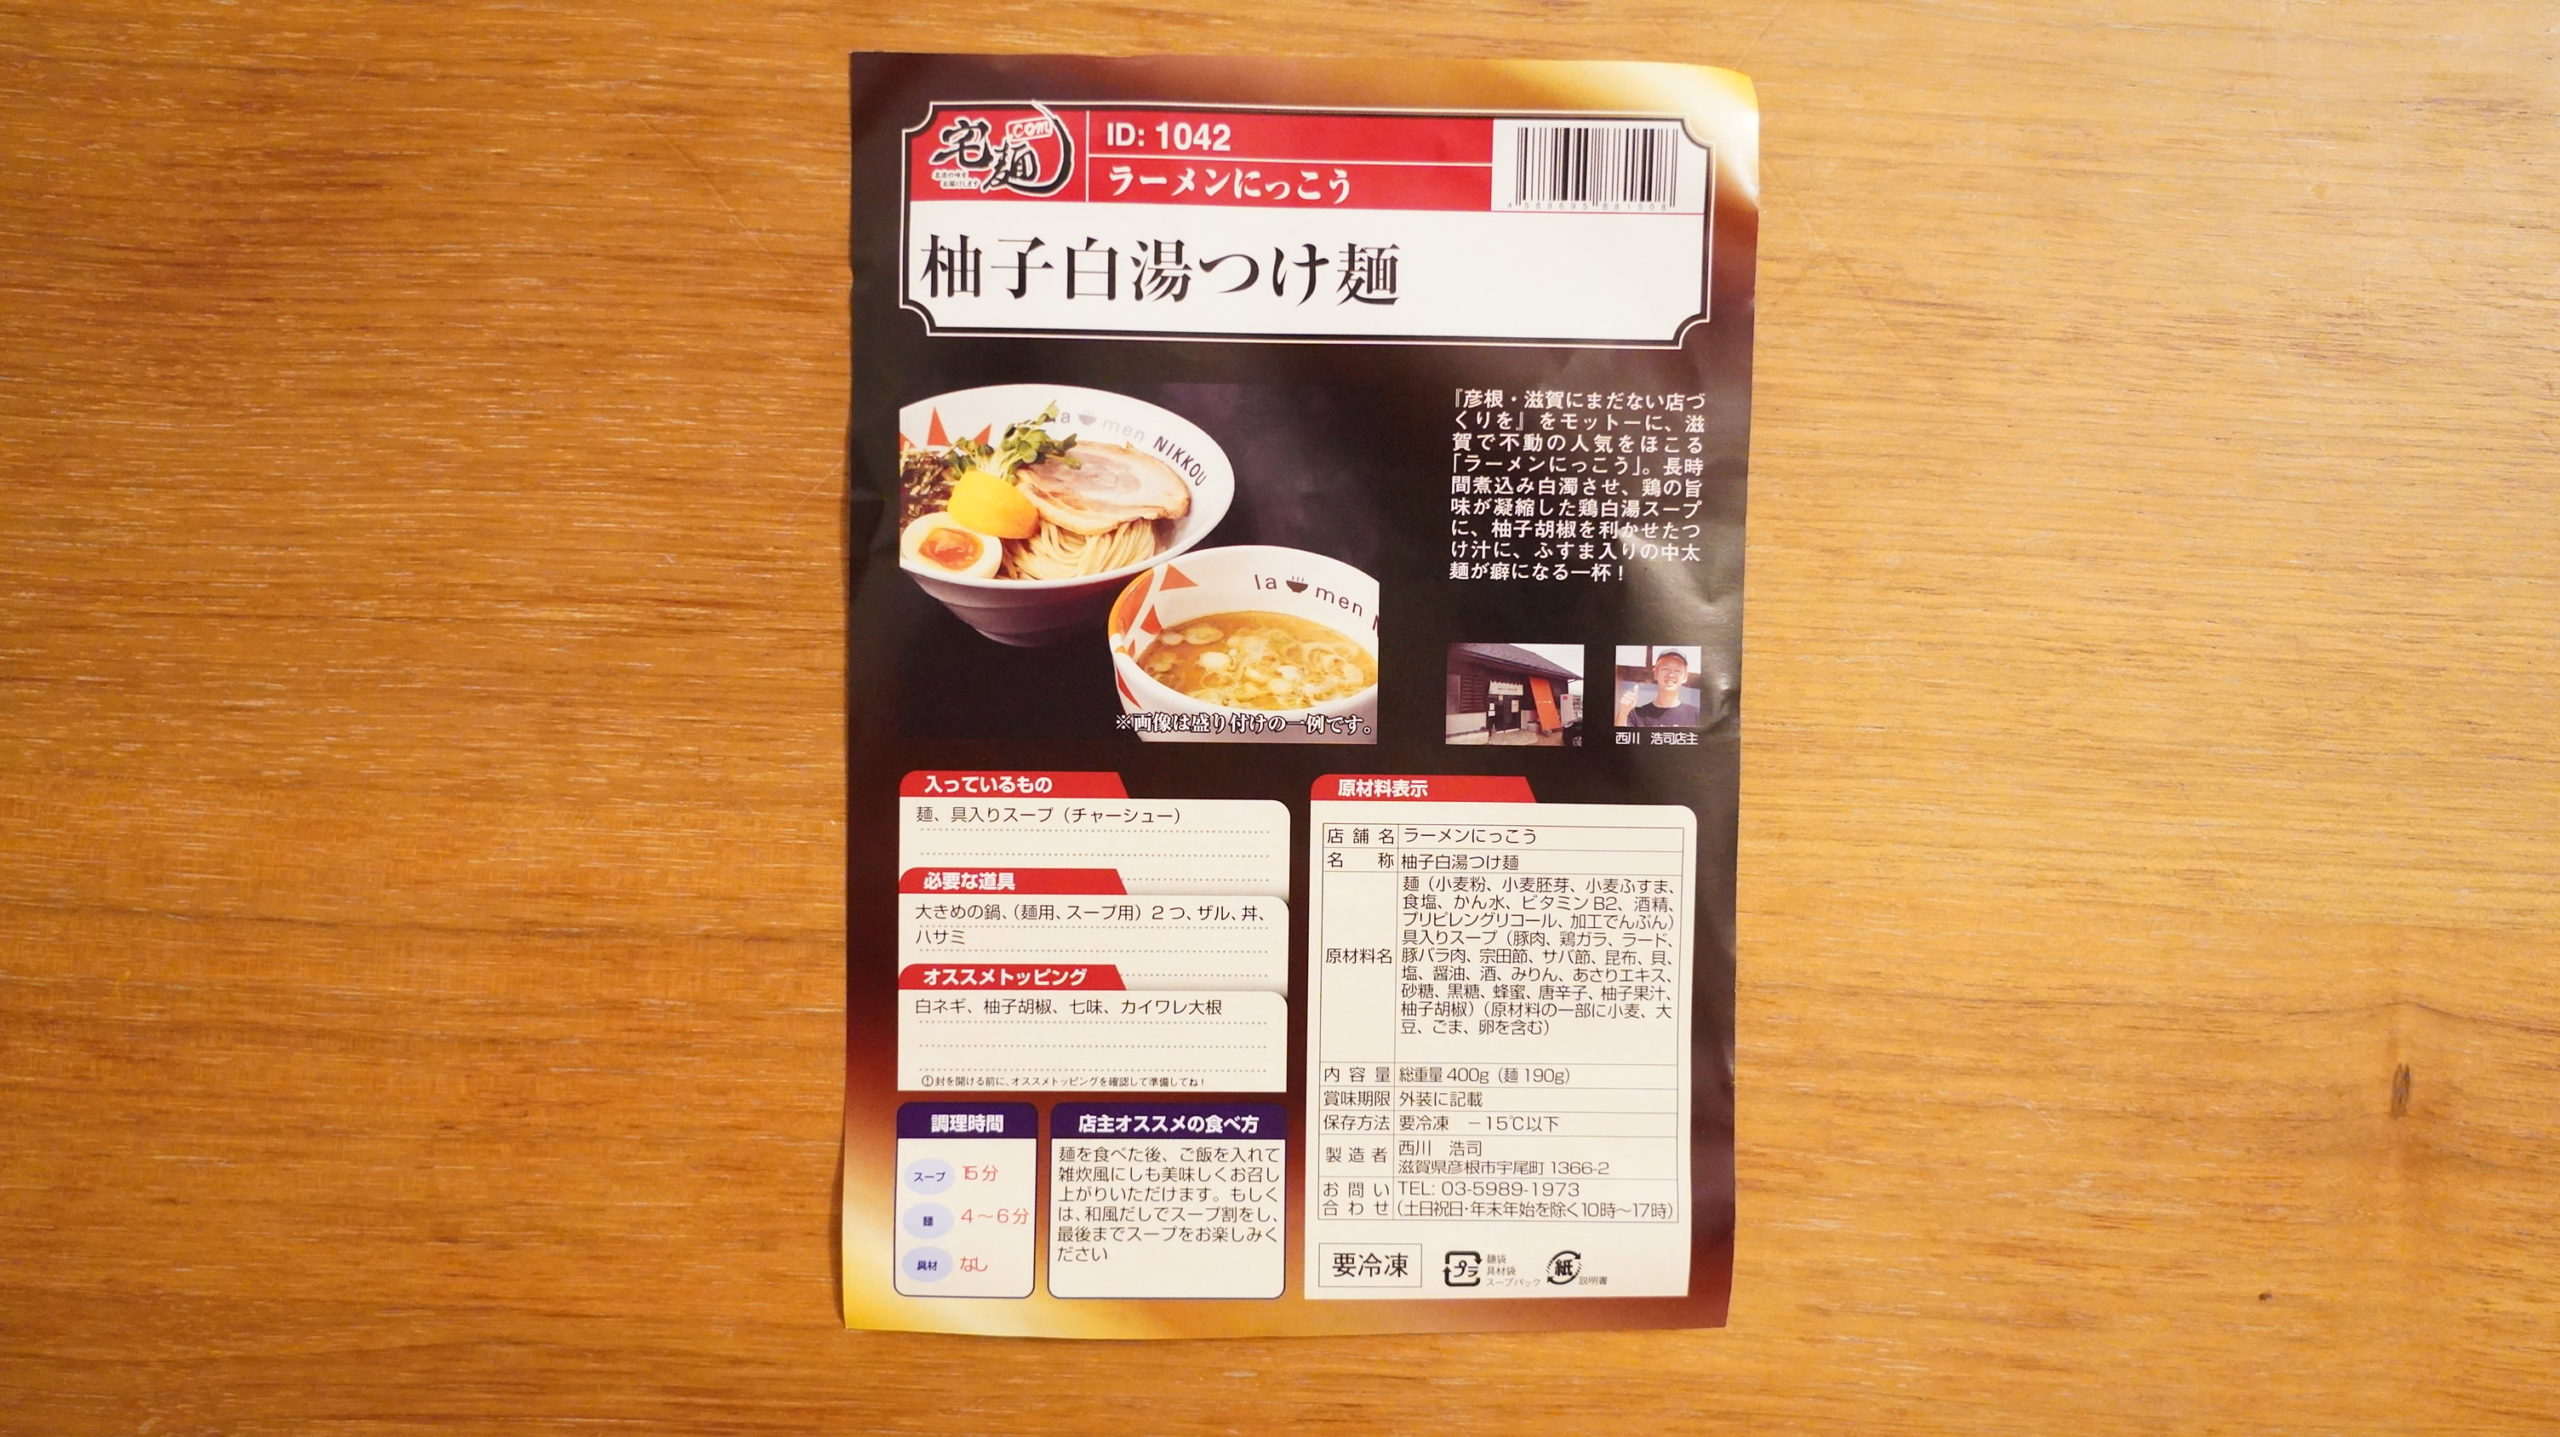 「ラーメンにっこう」のお取り寄せオンライン通販「柚子白湯つけ麺」のパンフレットの写真